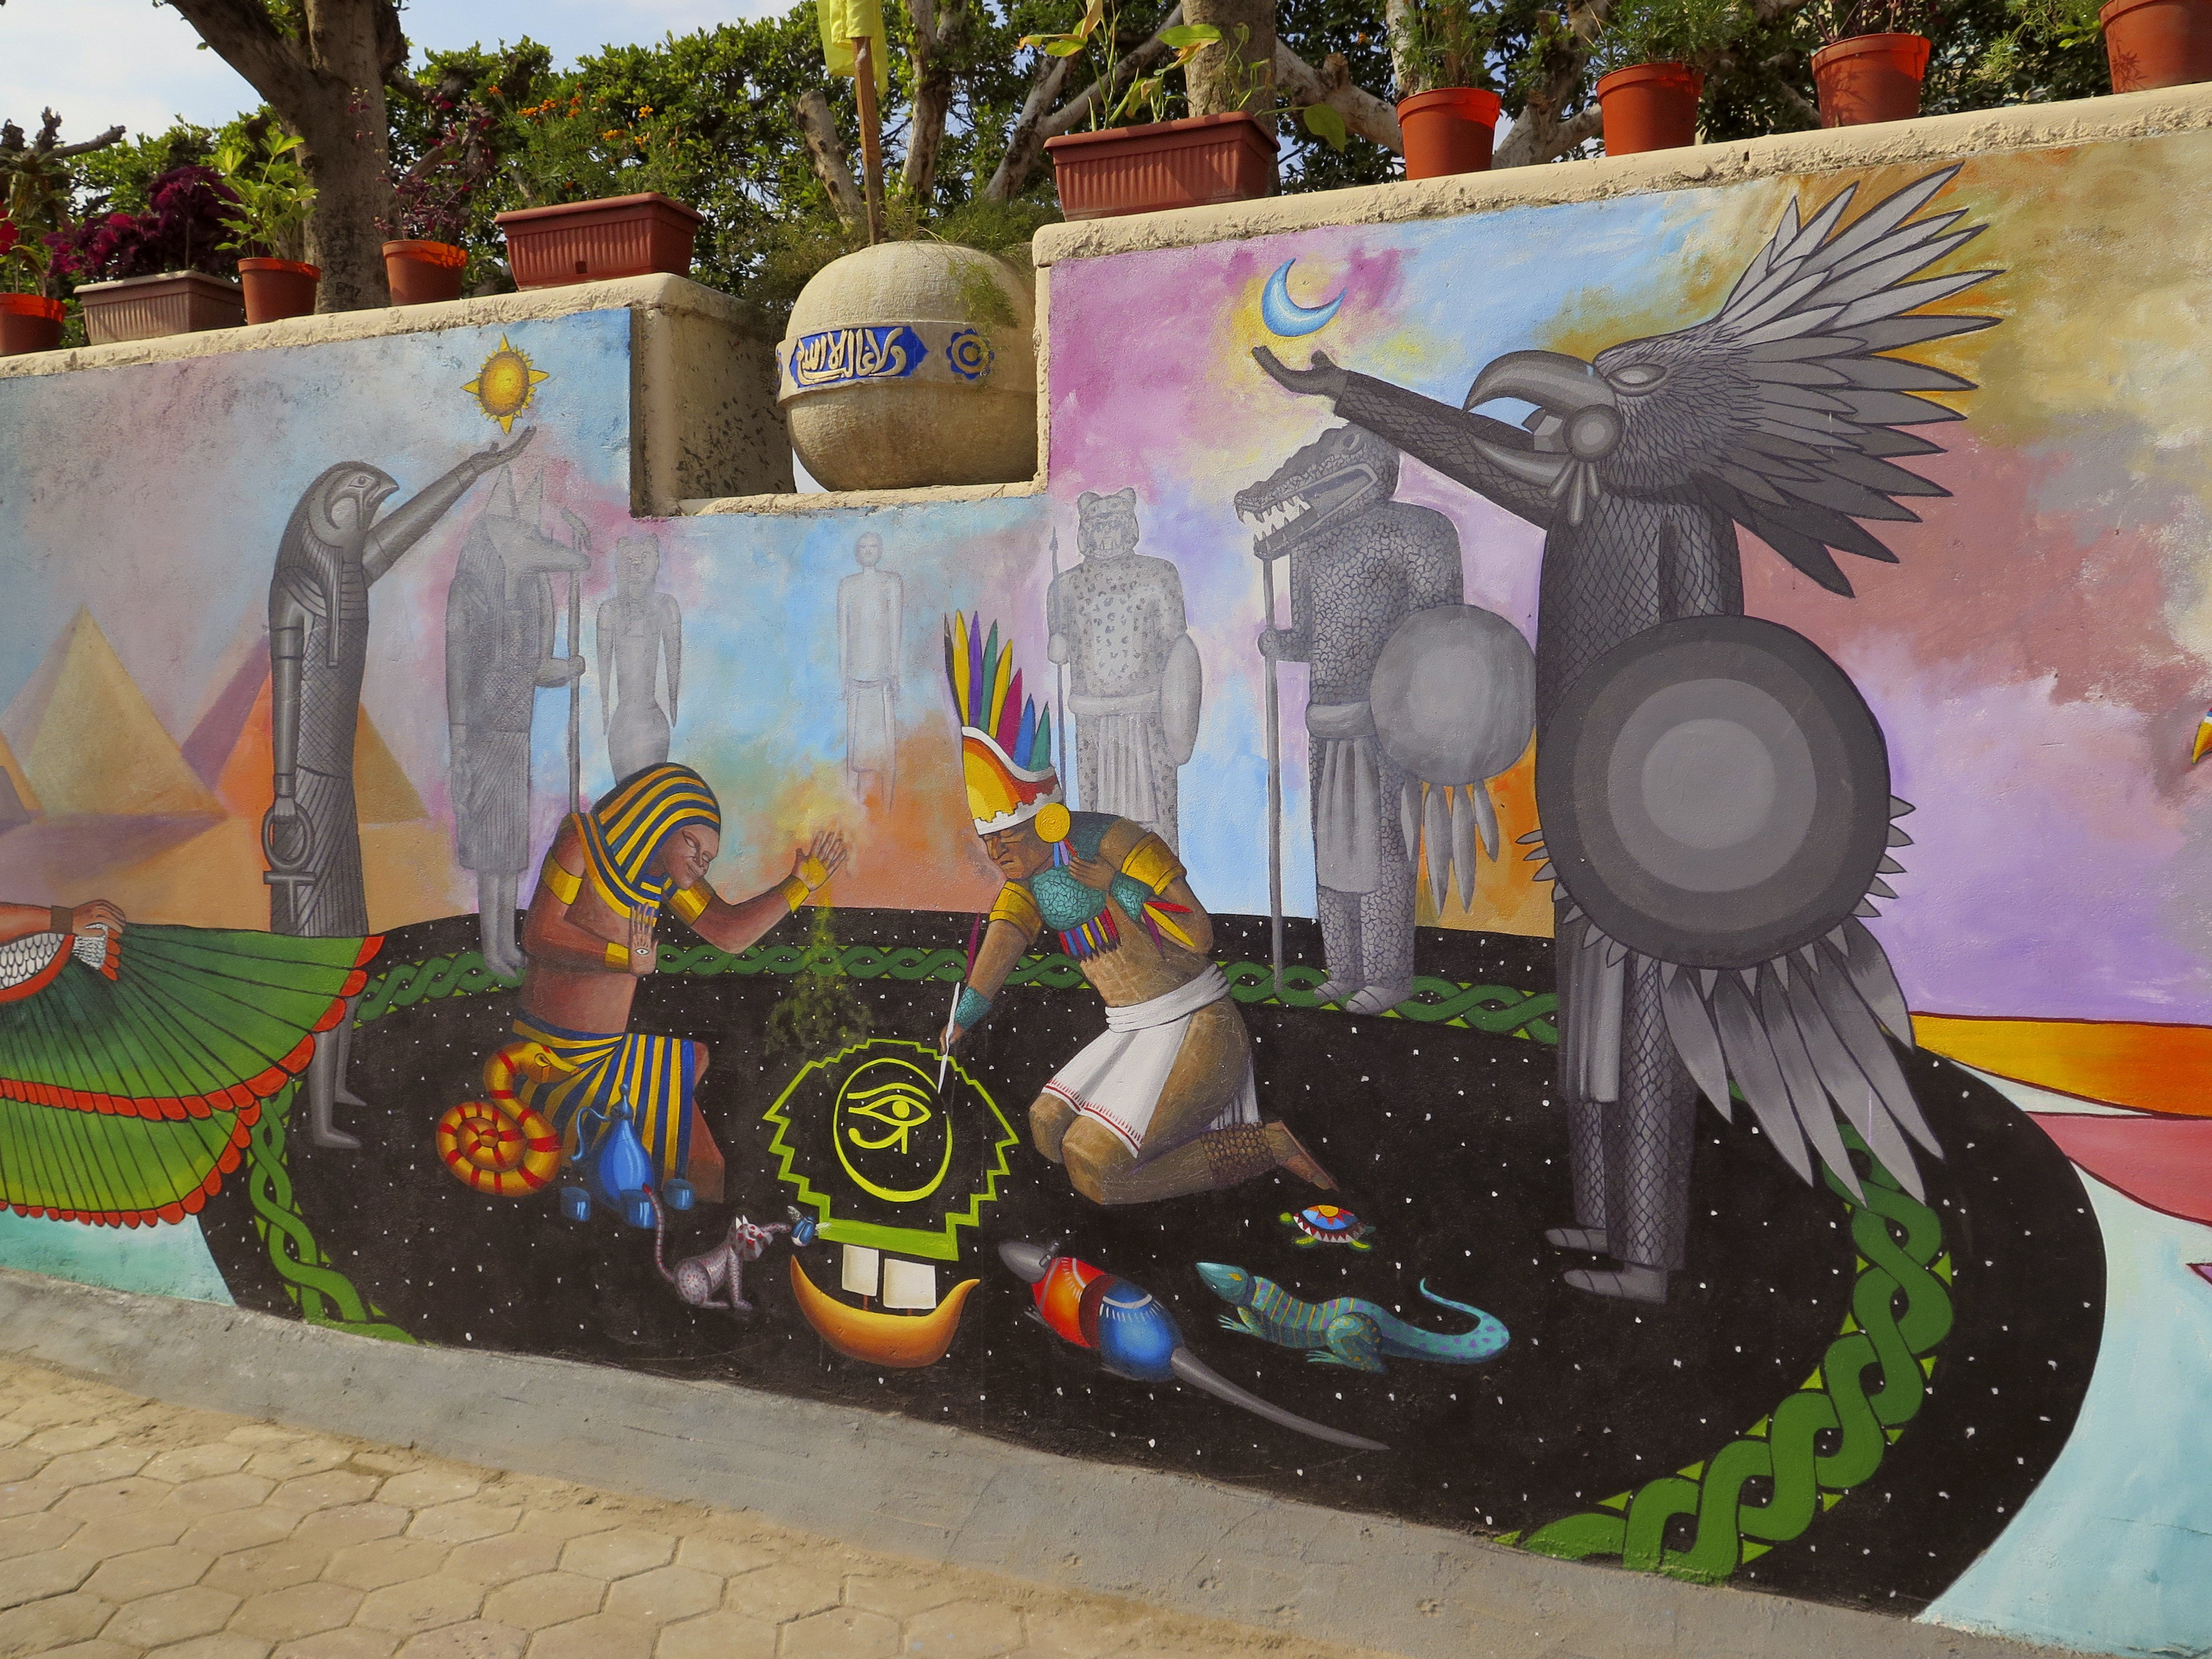  Inauguran en El Cairo mural que sintetiza lo mejor de las civilizaciones egipcia y mexicana